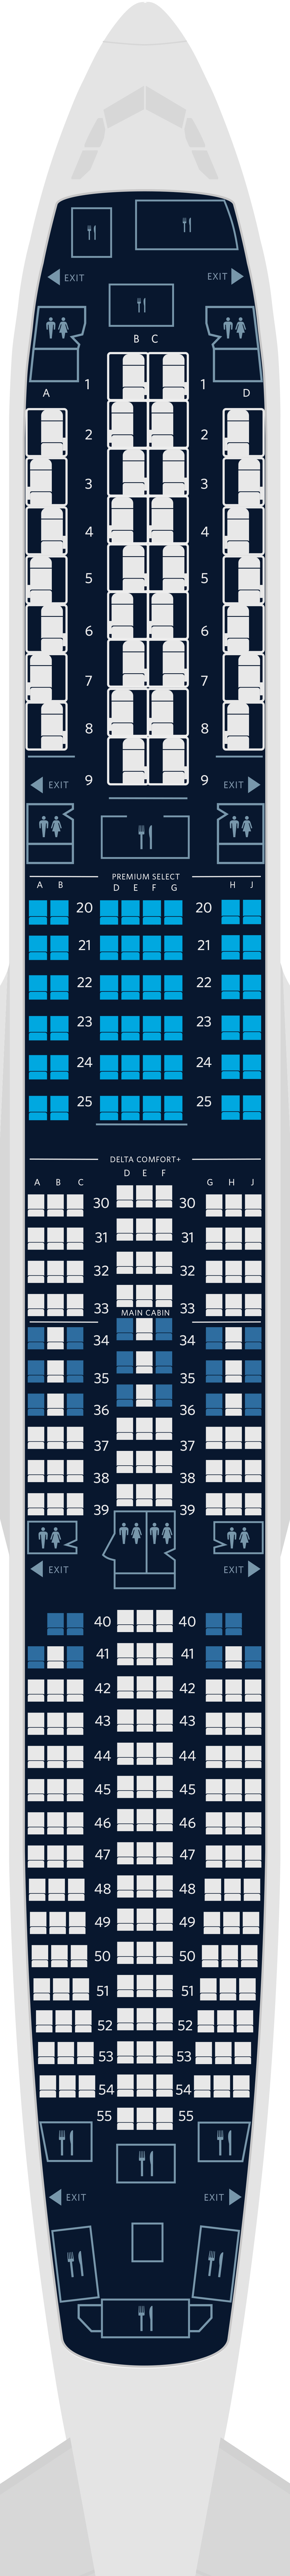  Mapa de assentos do Airbus A350-900 com 4 cabines